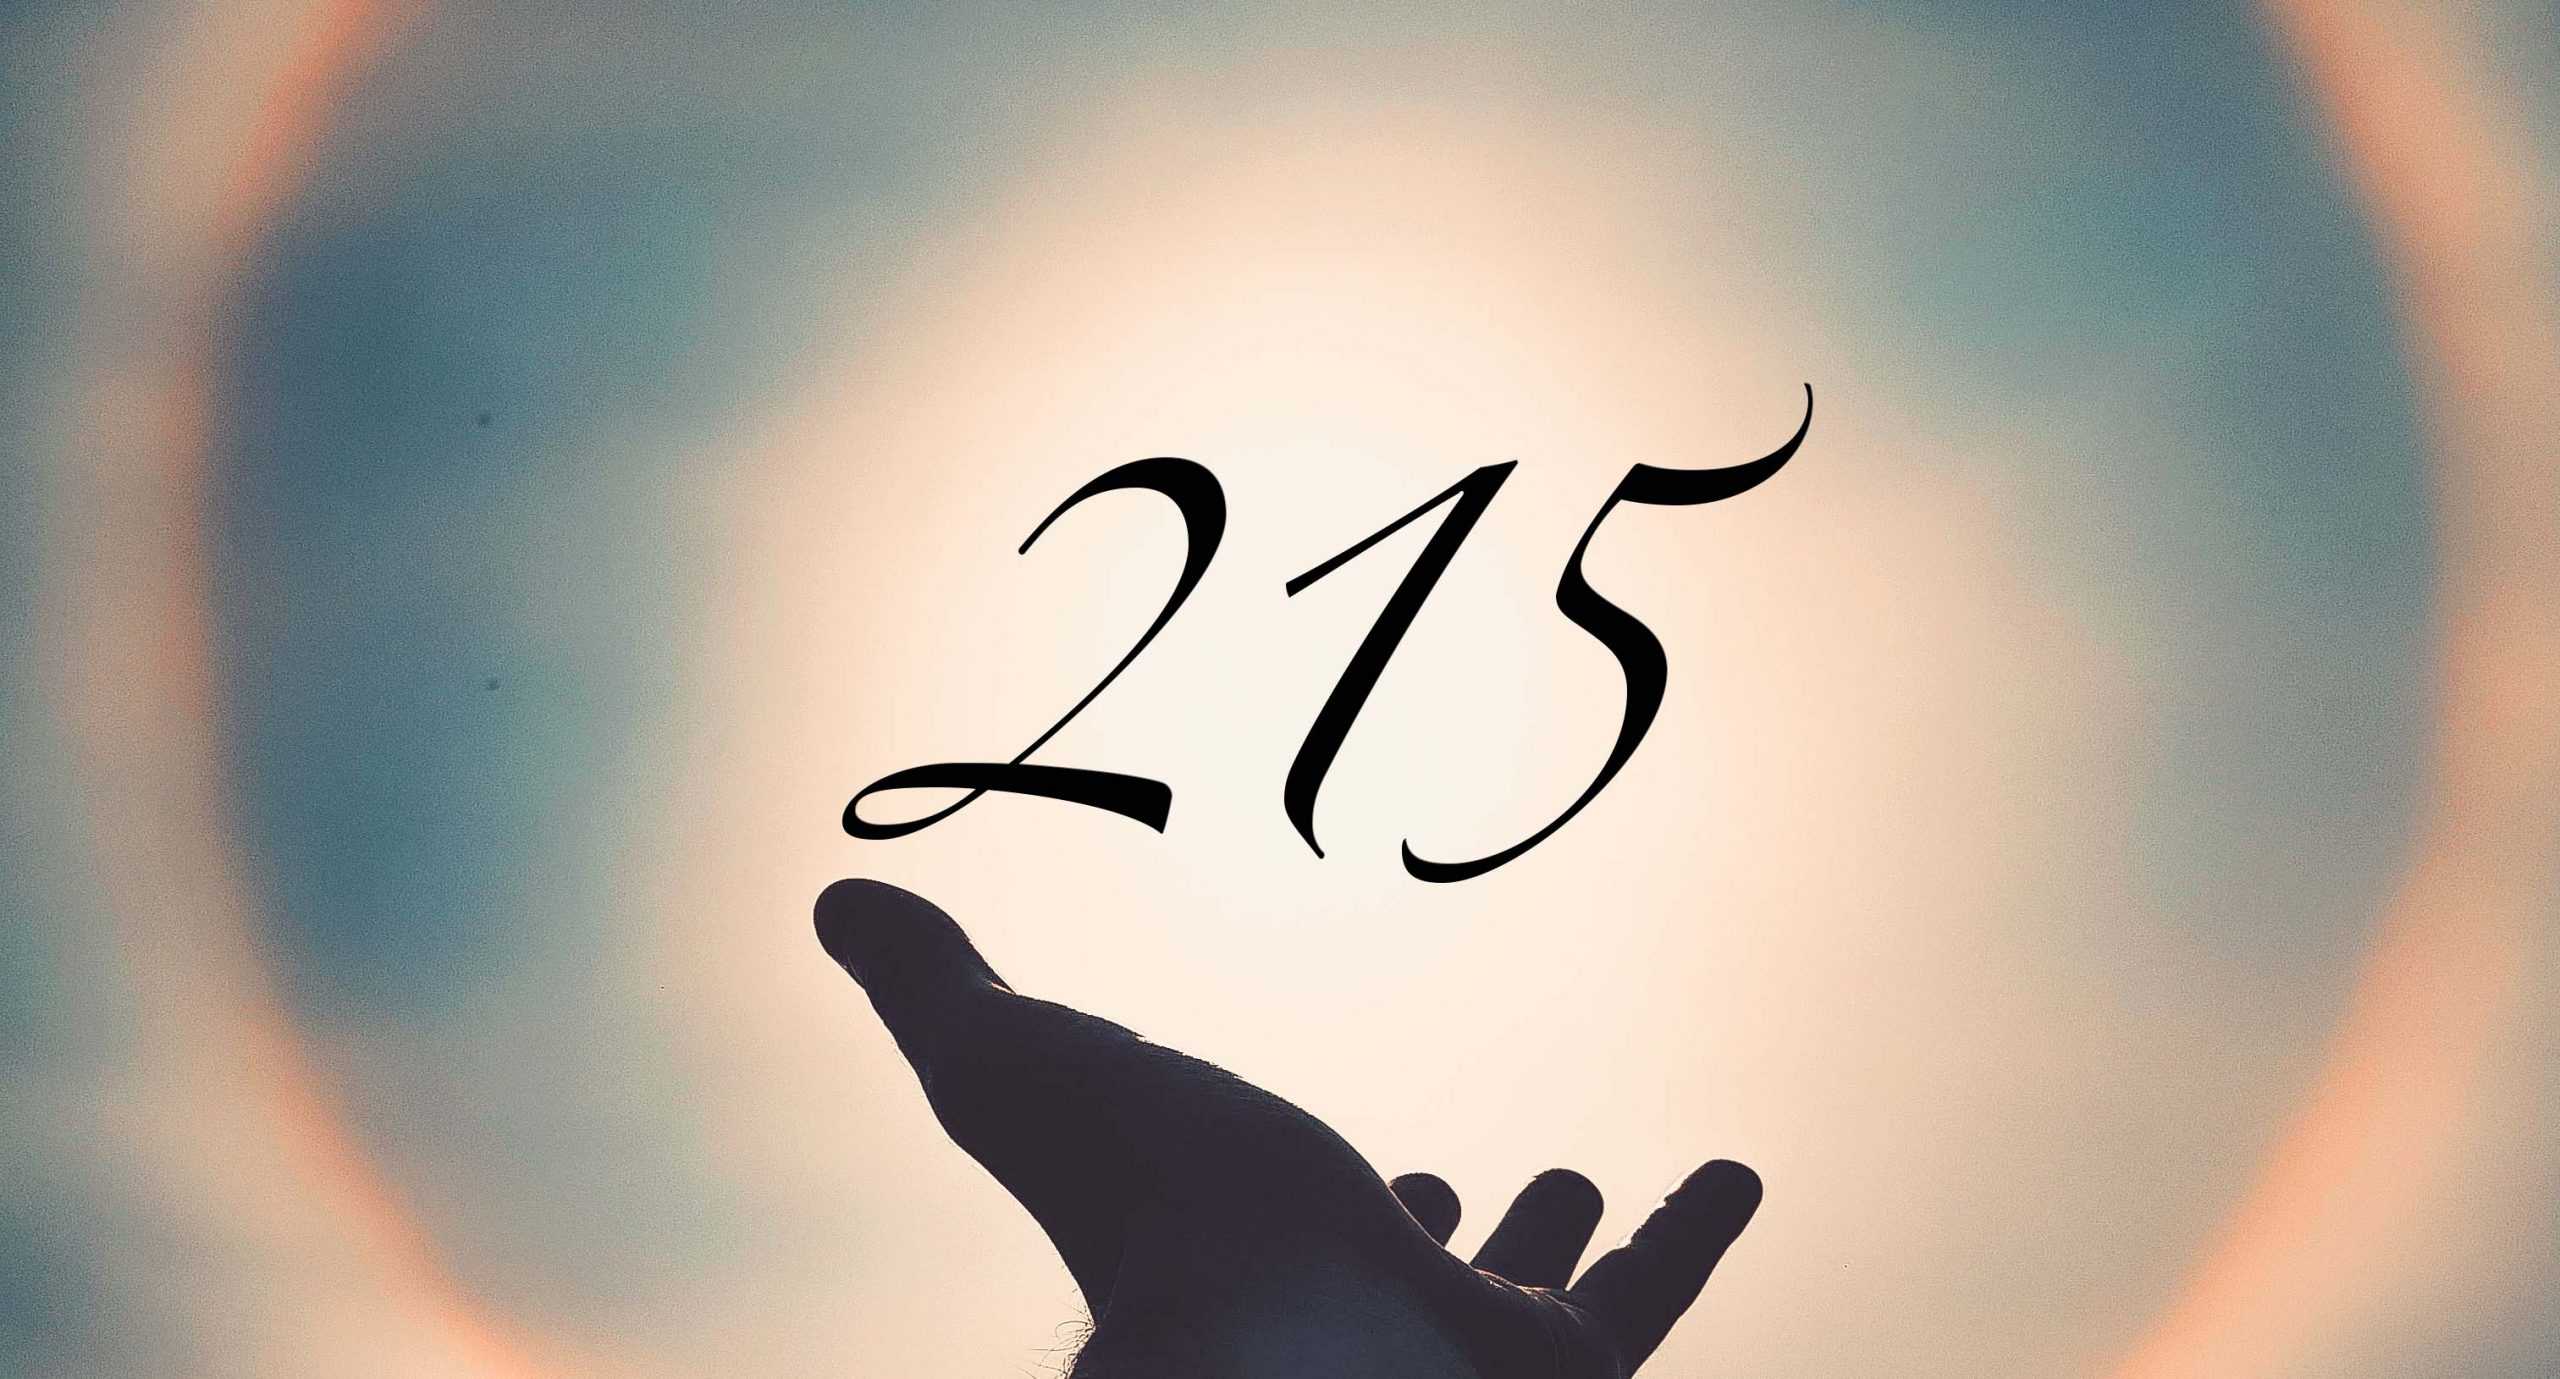 Signification du nombre 215